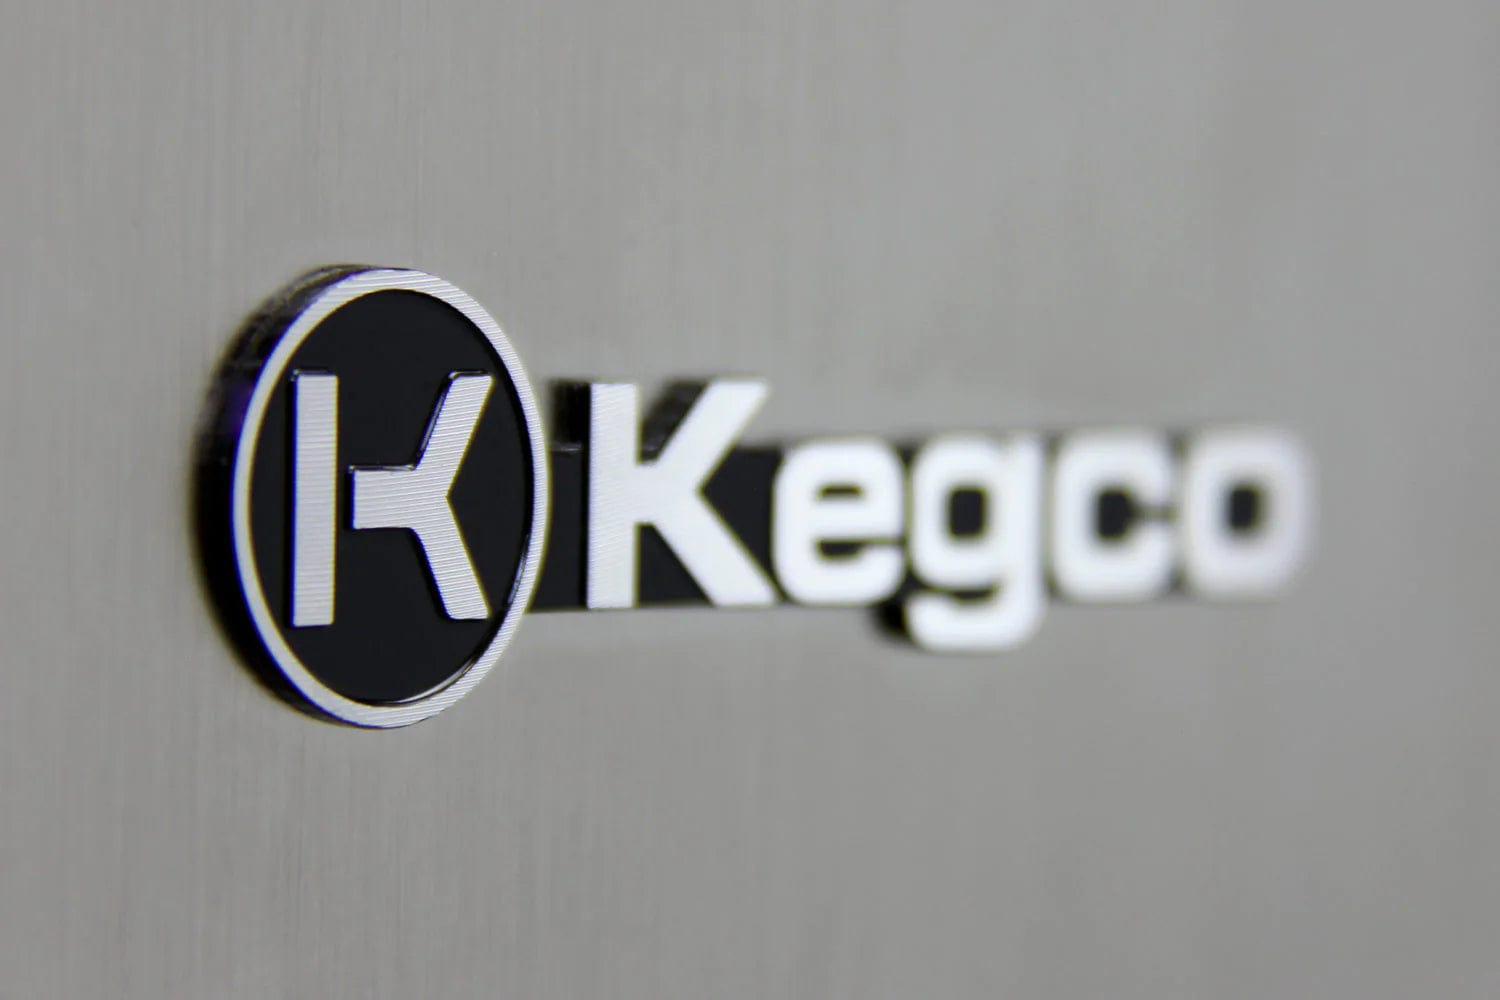 KEGCO Kegerator KEGCO 15 Wide Single Tap Stainless Steel Built in Right Hinge Kegerator-VSK15SR20